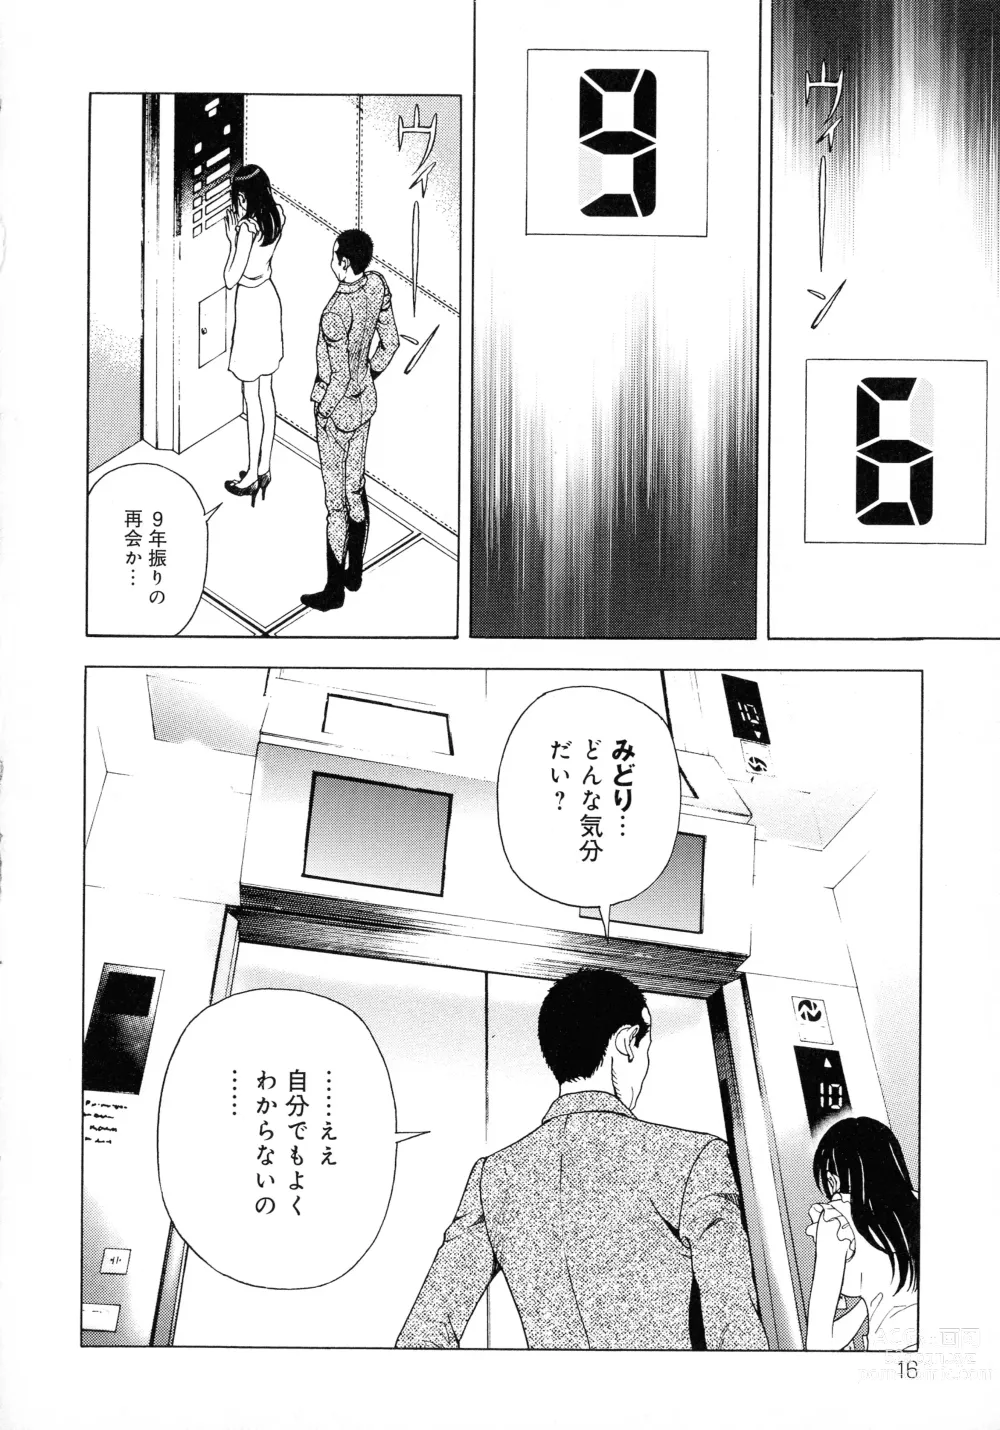 Page 16 of manga Bokinbako 2